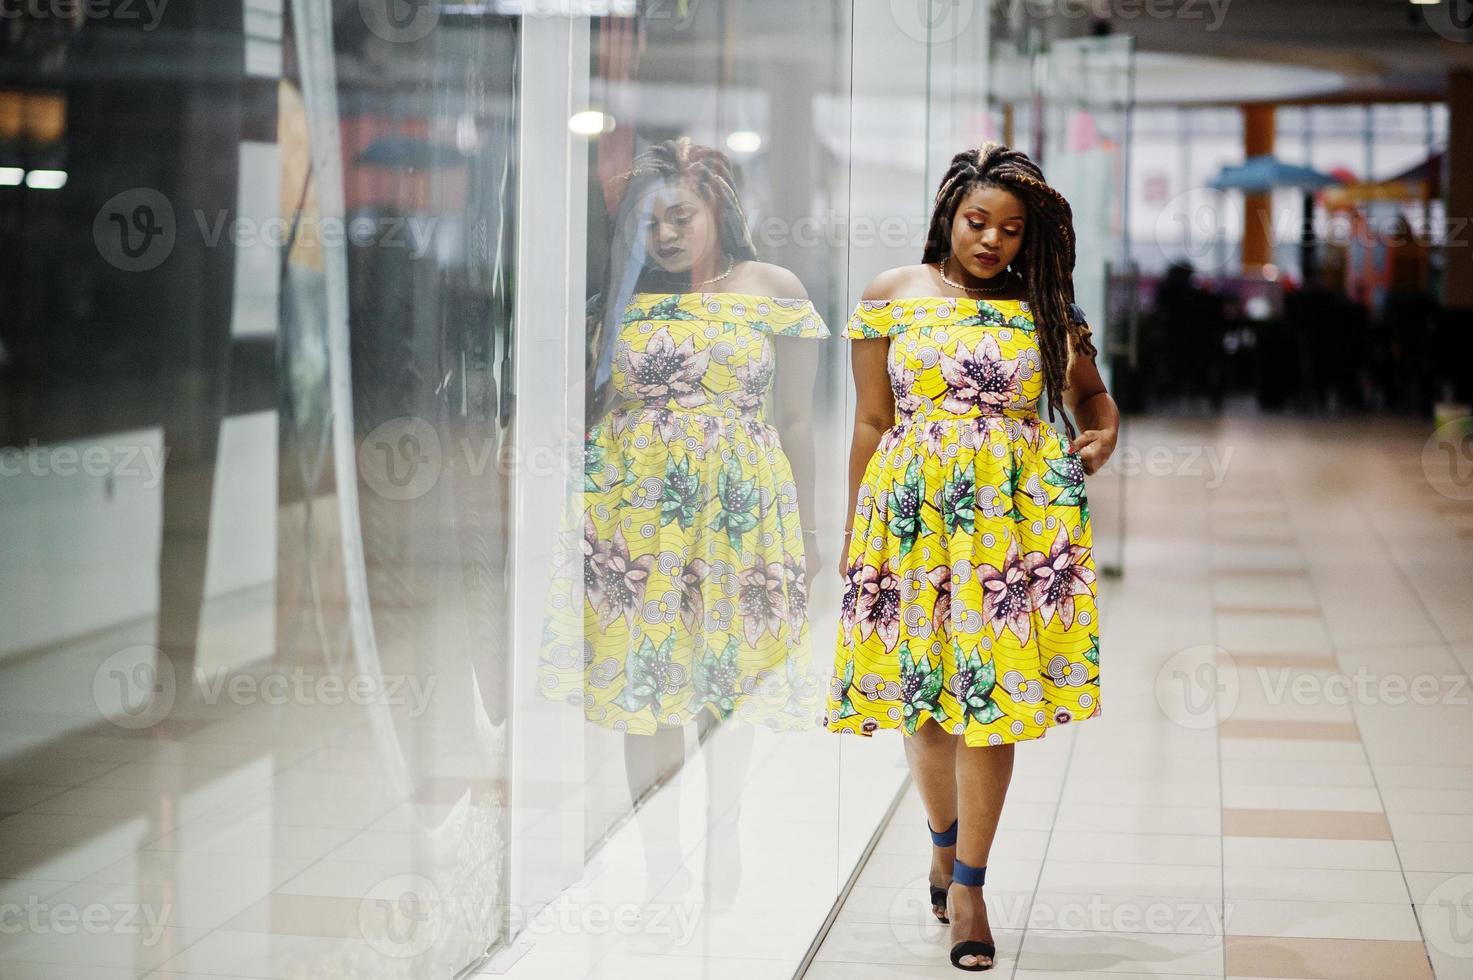 linda garota afro-americana de pequena altura com dreadlocks, use um vestido amarelo colorido, posou de vitrine de loja no centro de comércio. foto